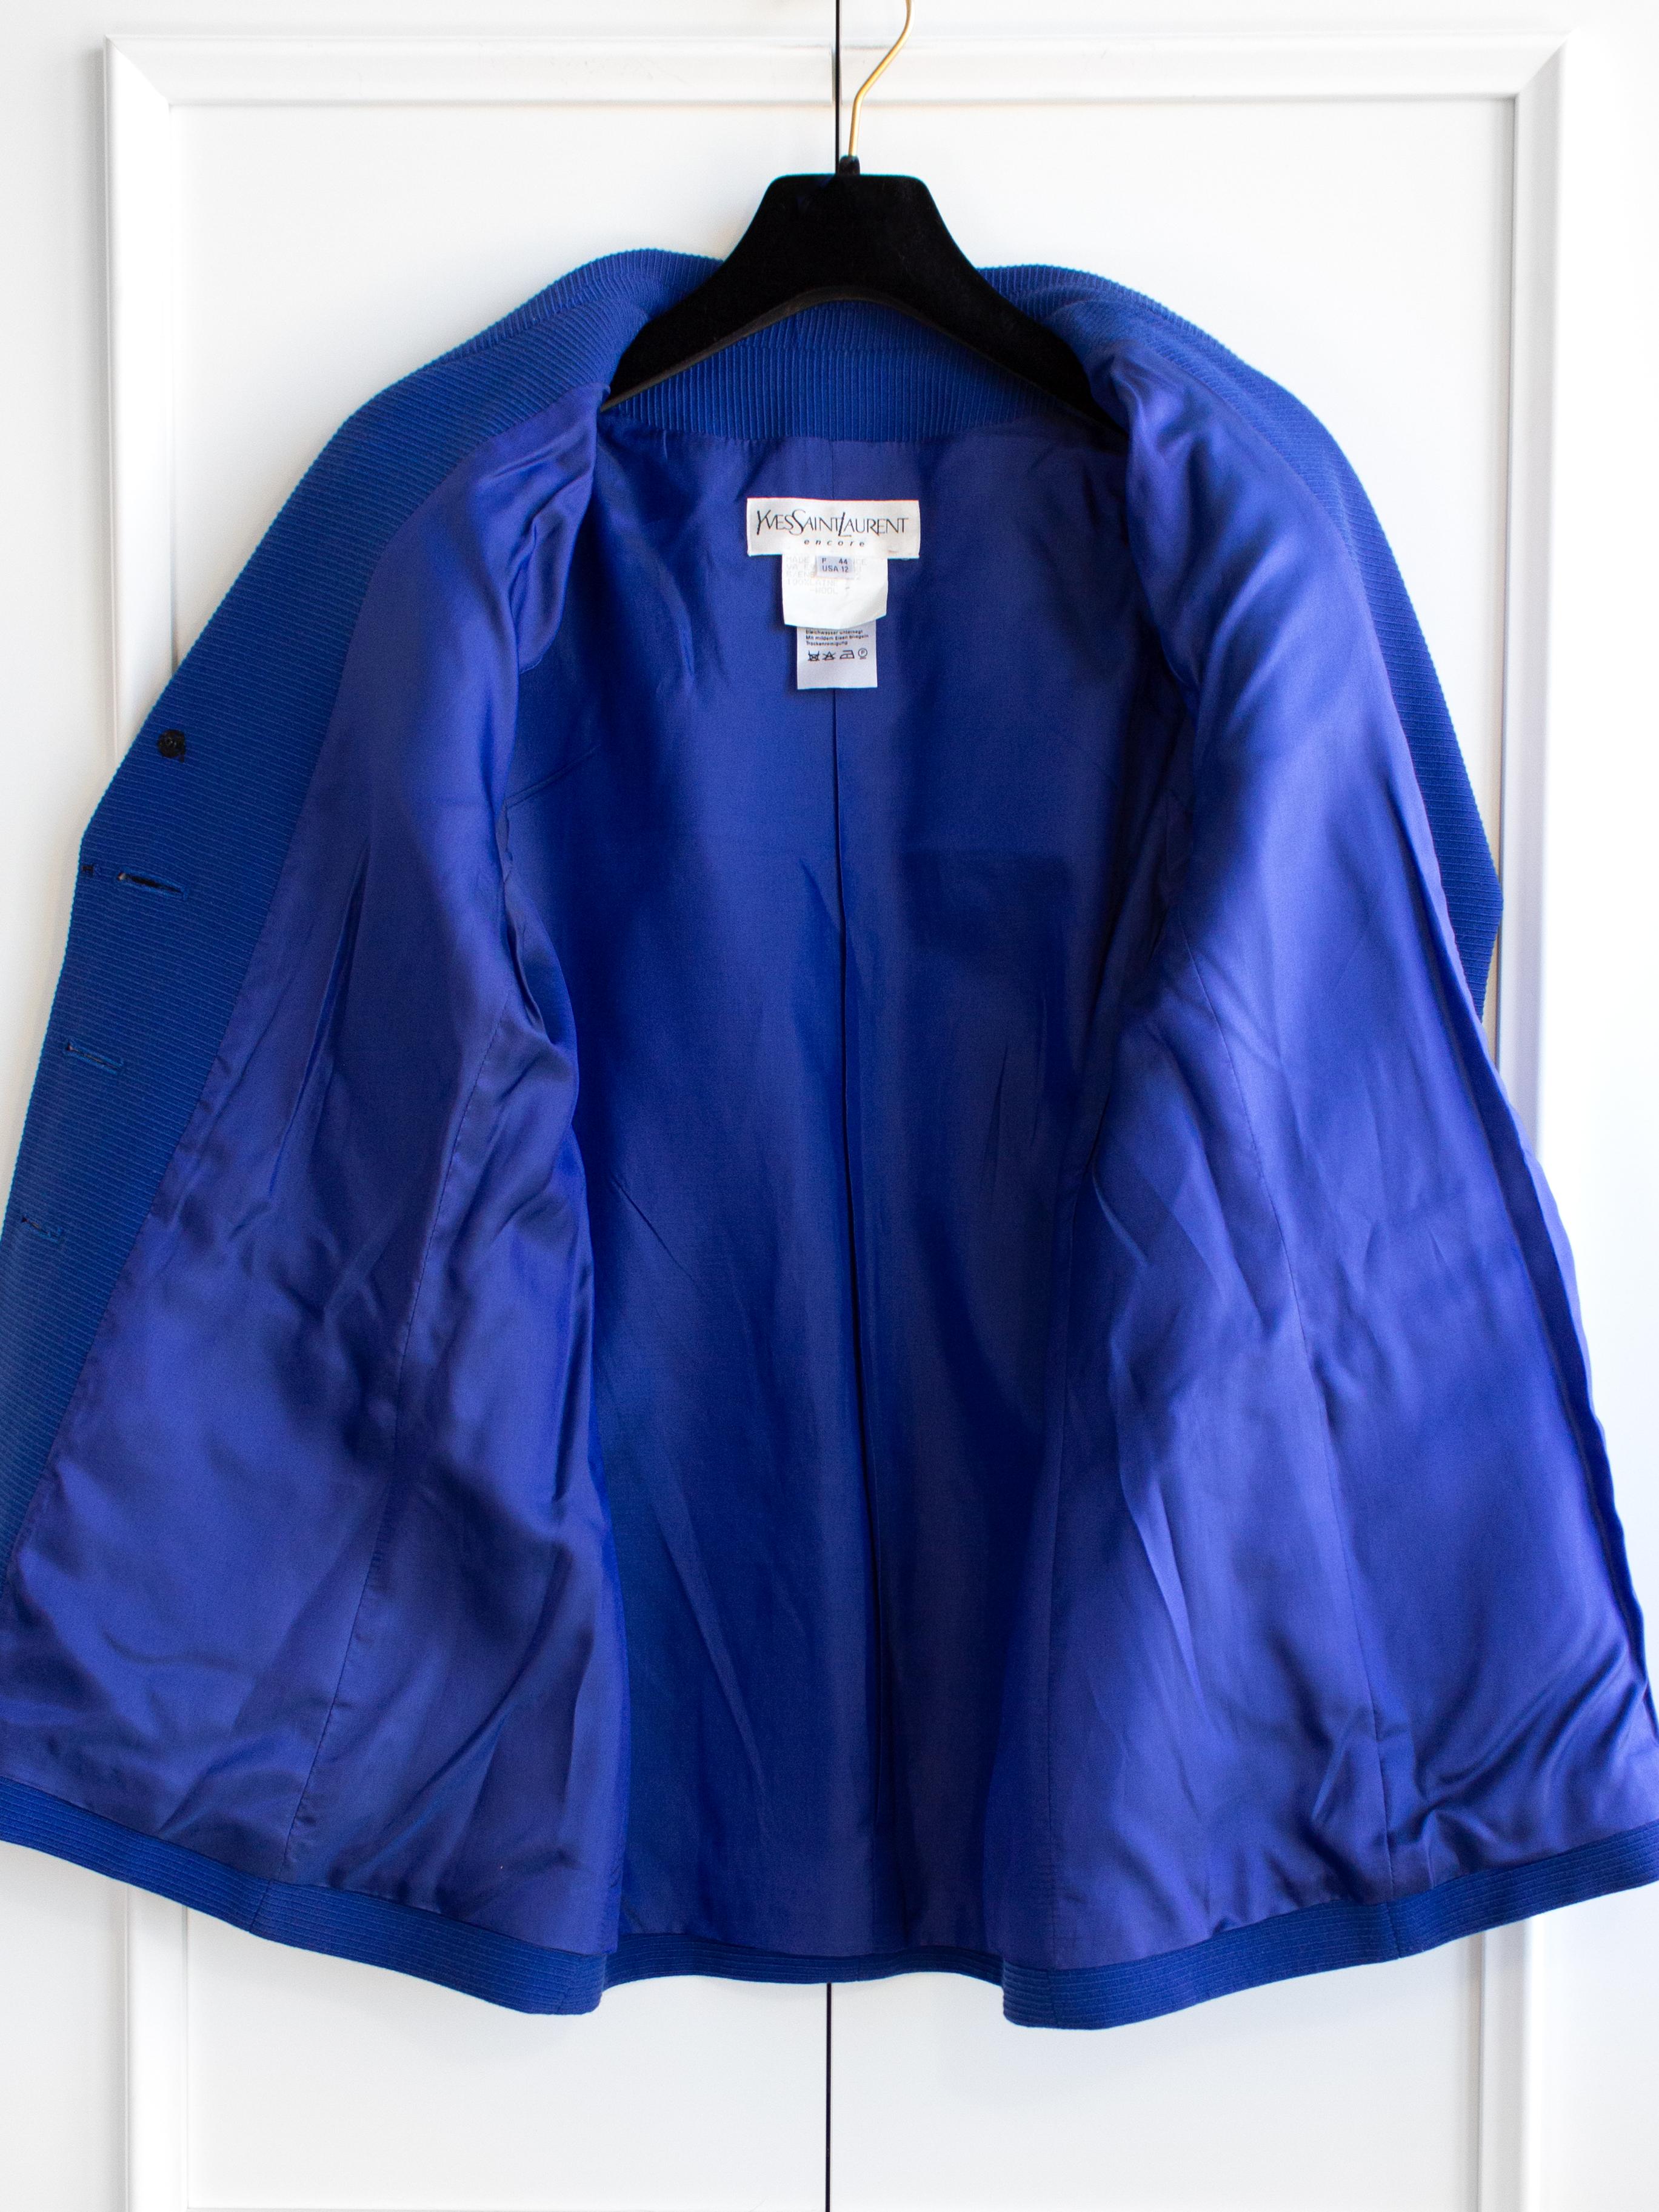 Yves Saint Laurent Encore Vintage S/S 1995 Royal Blue Gold Hearts Jacket Suit For Sale 8